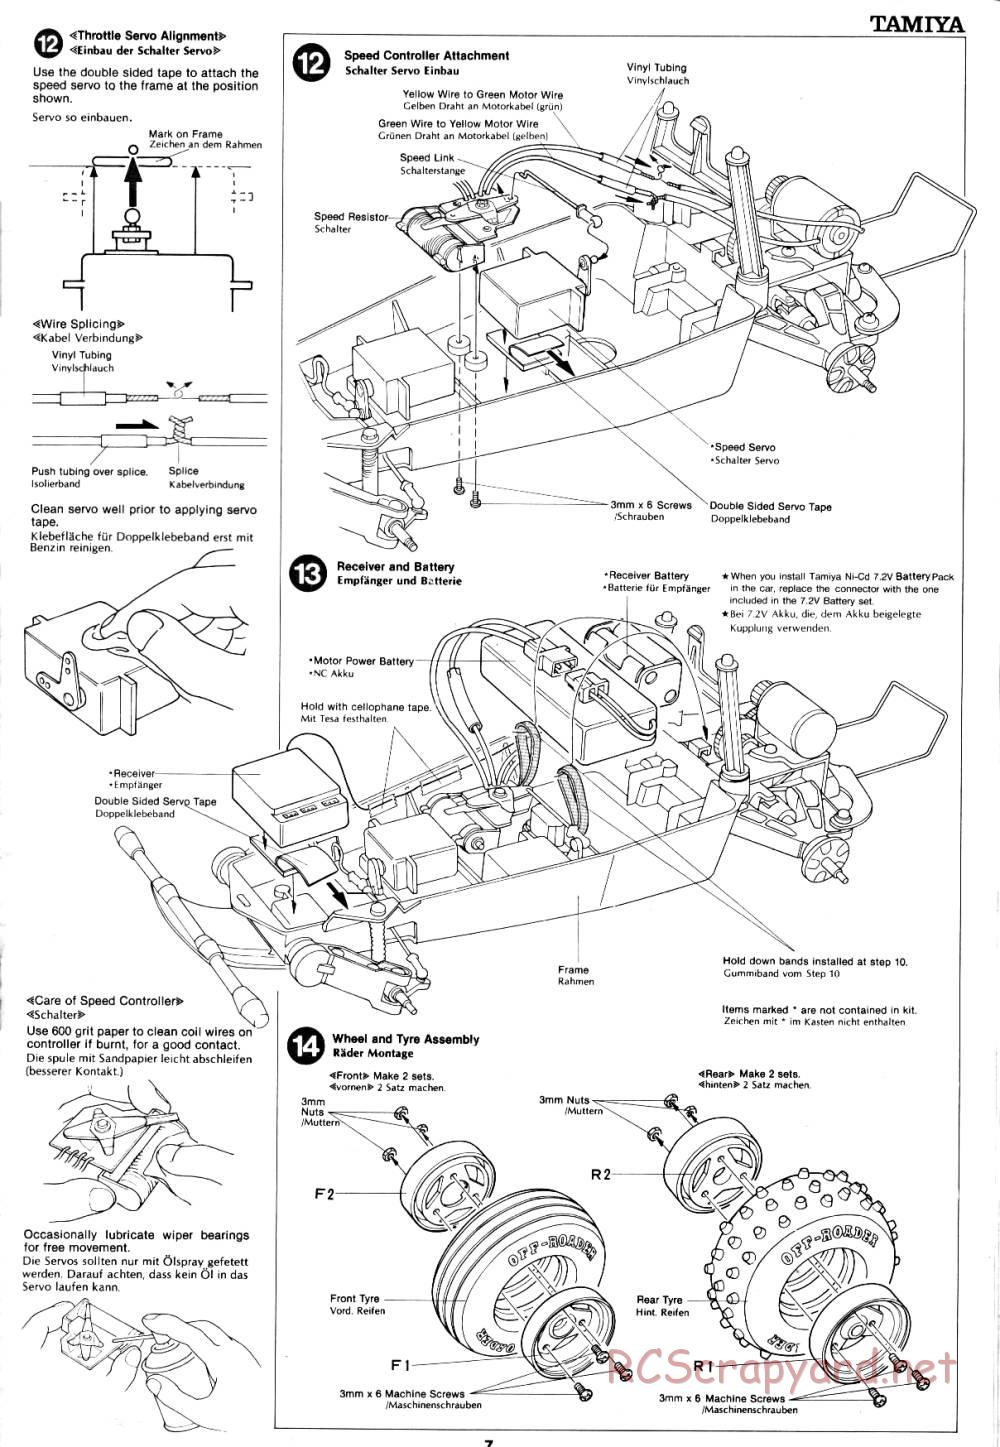 Tamiya - Holiday Buggy - 58023 - Manual - Page 7